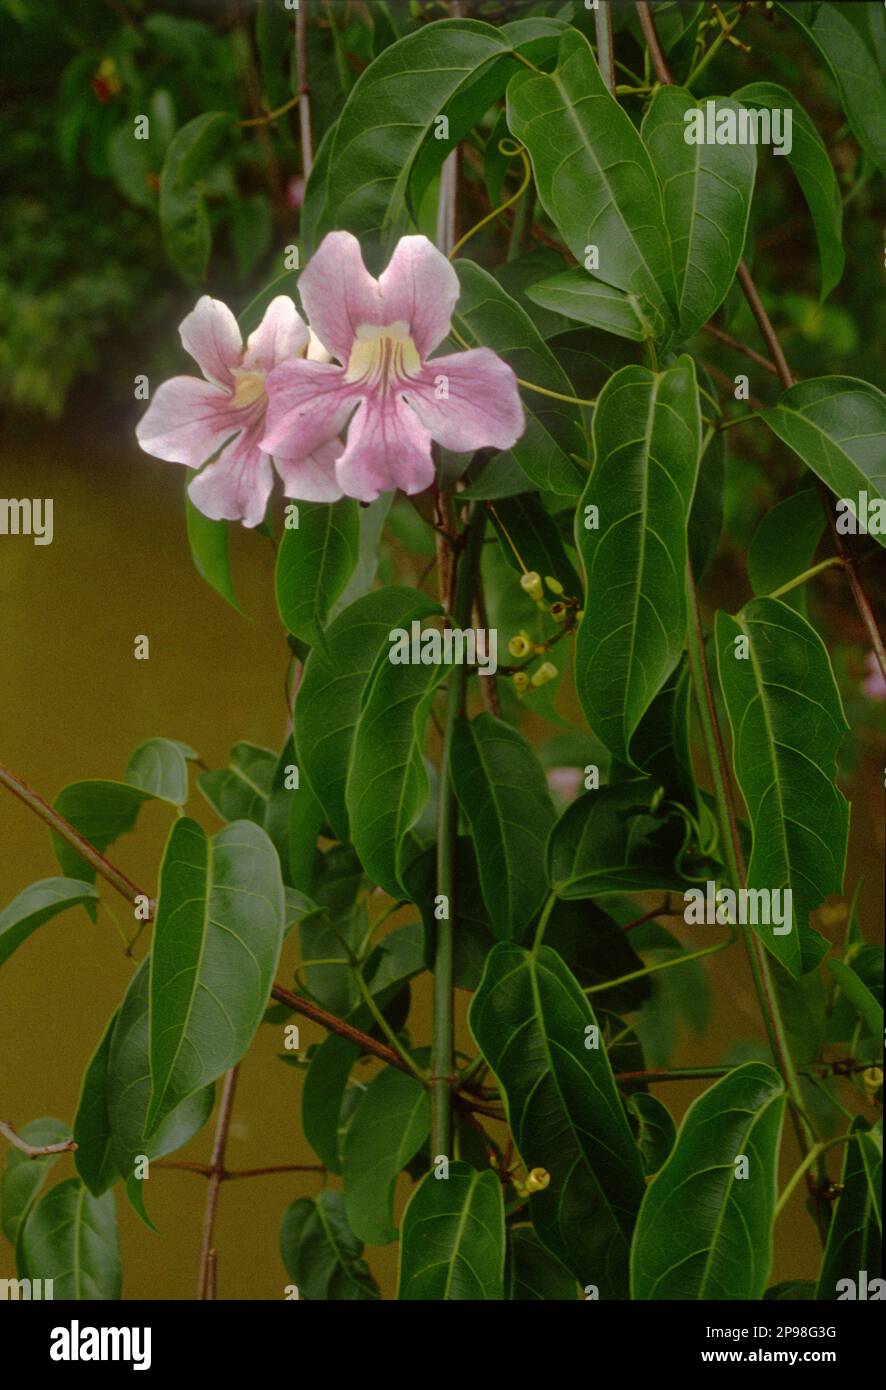 Cydista aequinoctialis (Familie: Bignoniaceae), eine Liane im tropischen Regenwald am Ufer von rio Maiguari, Mündung des Amazonas, Staat Pará, Brasilien. Stockfoto